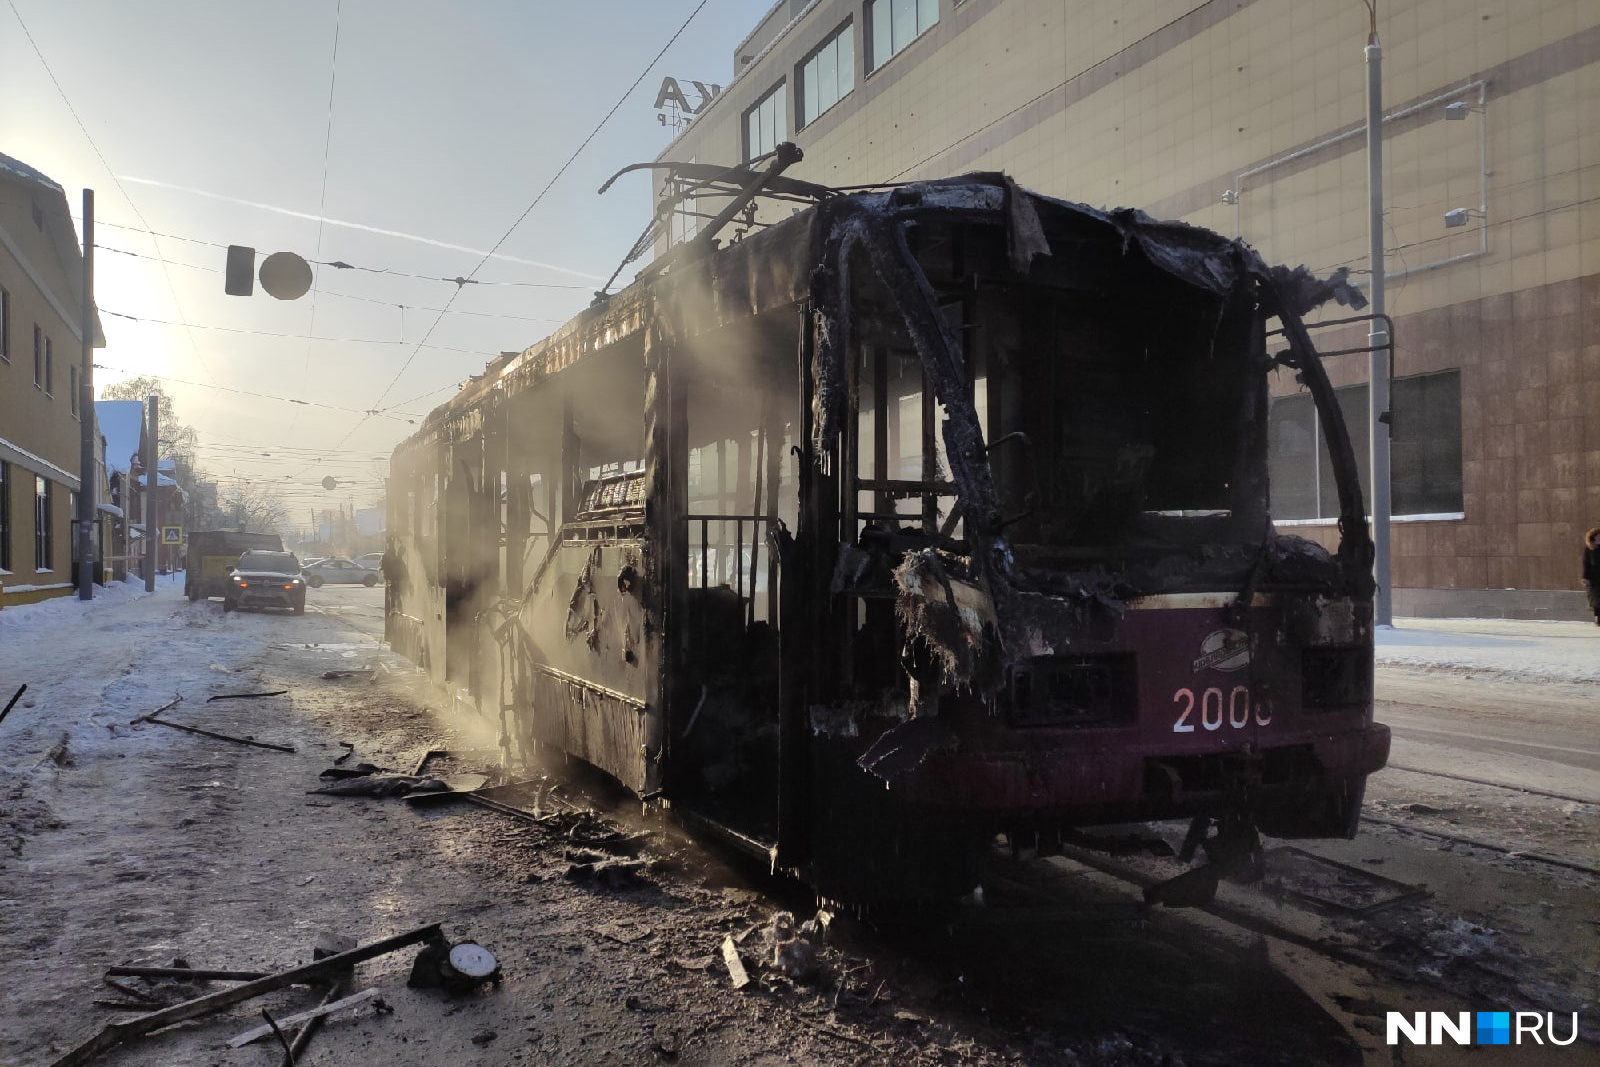 Сгорел трамвай в Нижнем Новгороде 23 декабря. Пожар трамвая в Нижнем Новгороде. В Нижнем сгорел трамвай. 23 декабря 2015